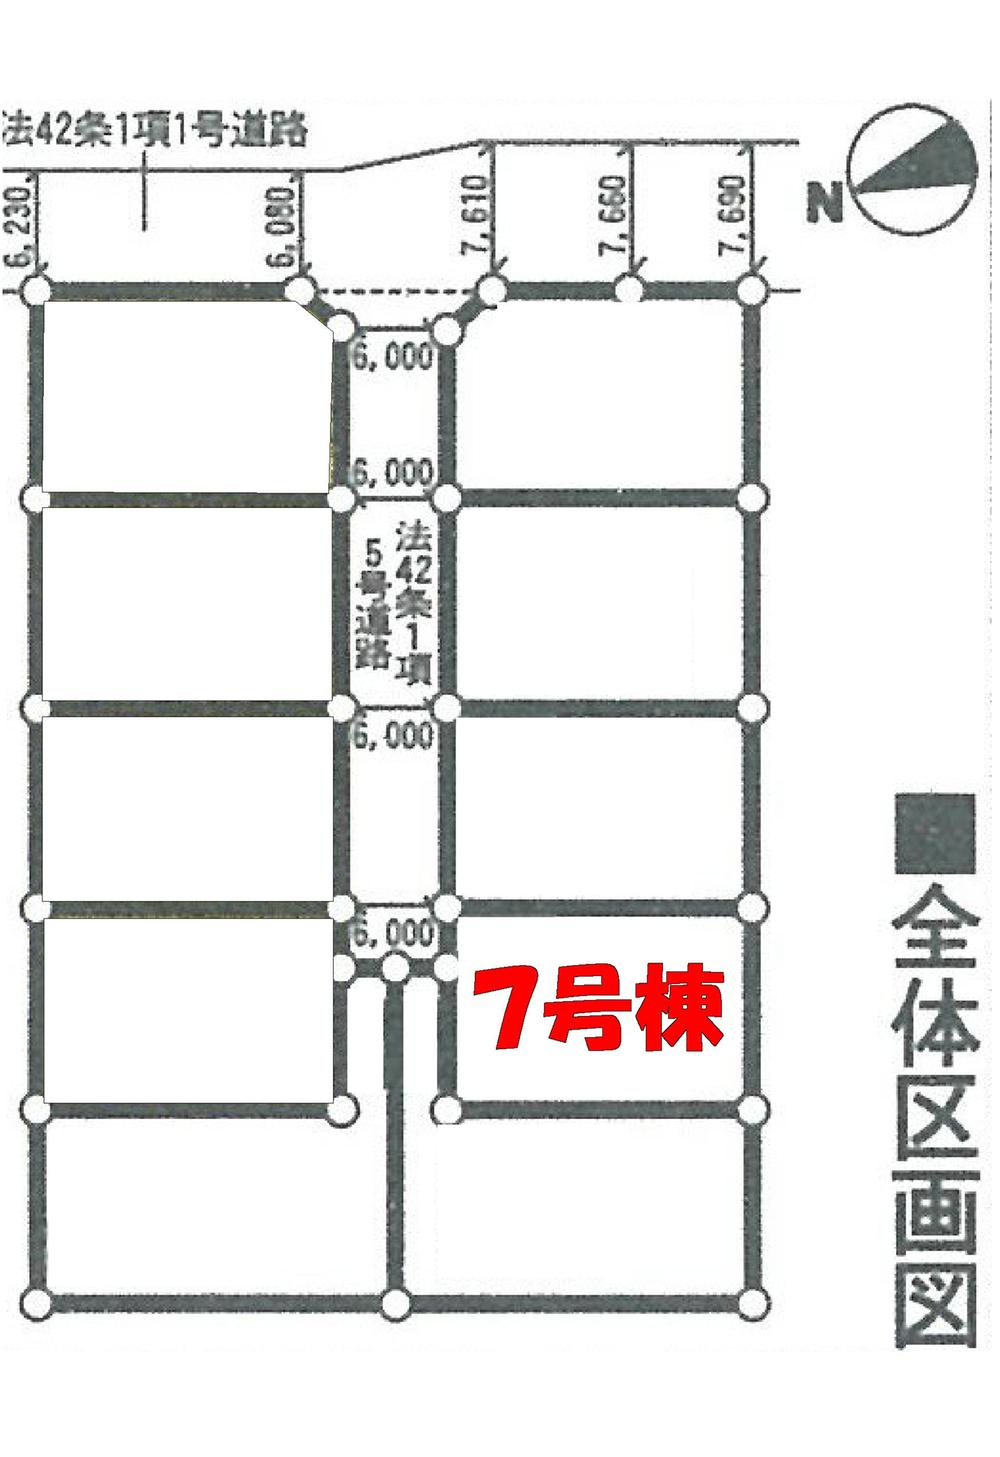 Compartment figure. 20,900,000 yen, 4LDK, Land area 165.47 sq m , Building area 98.81 sq m